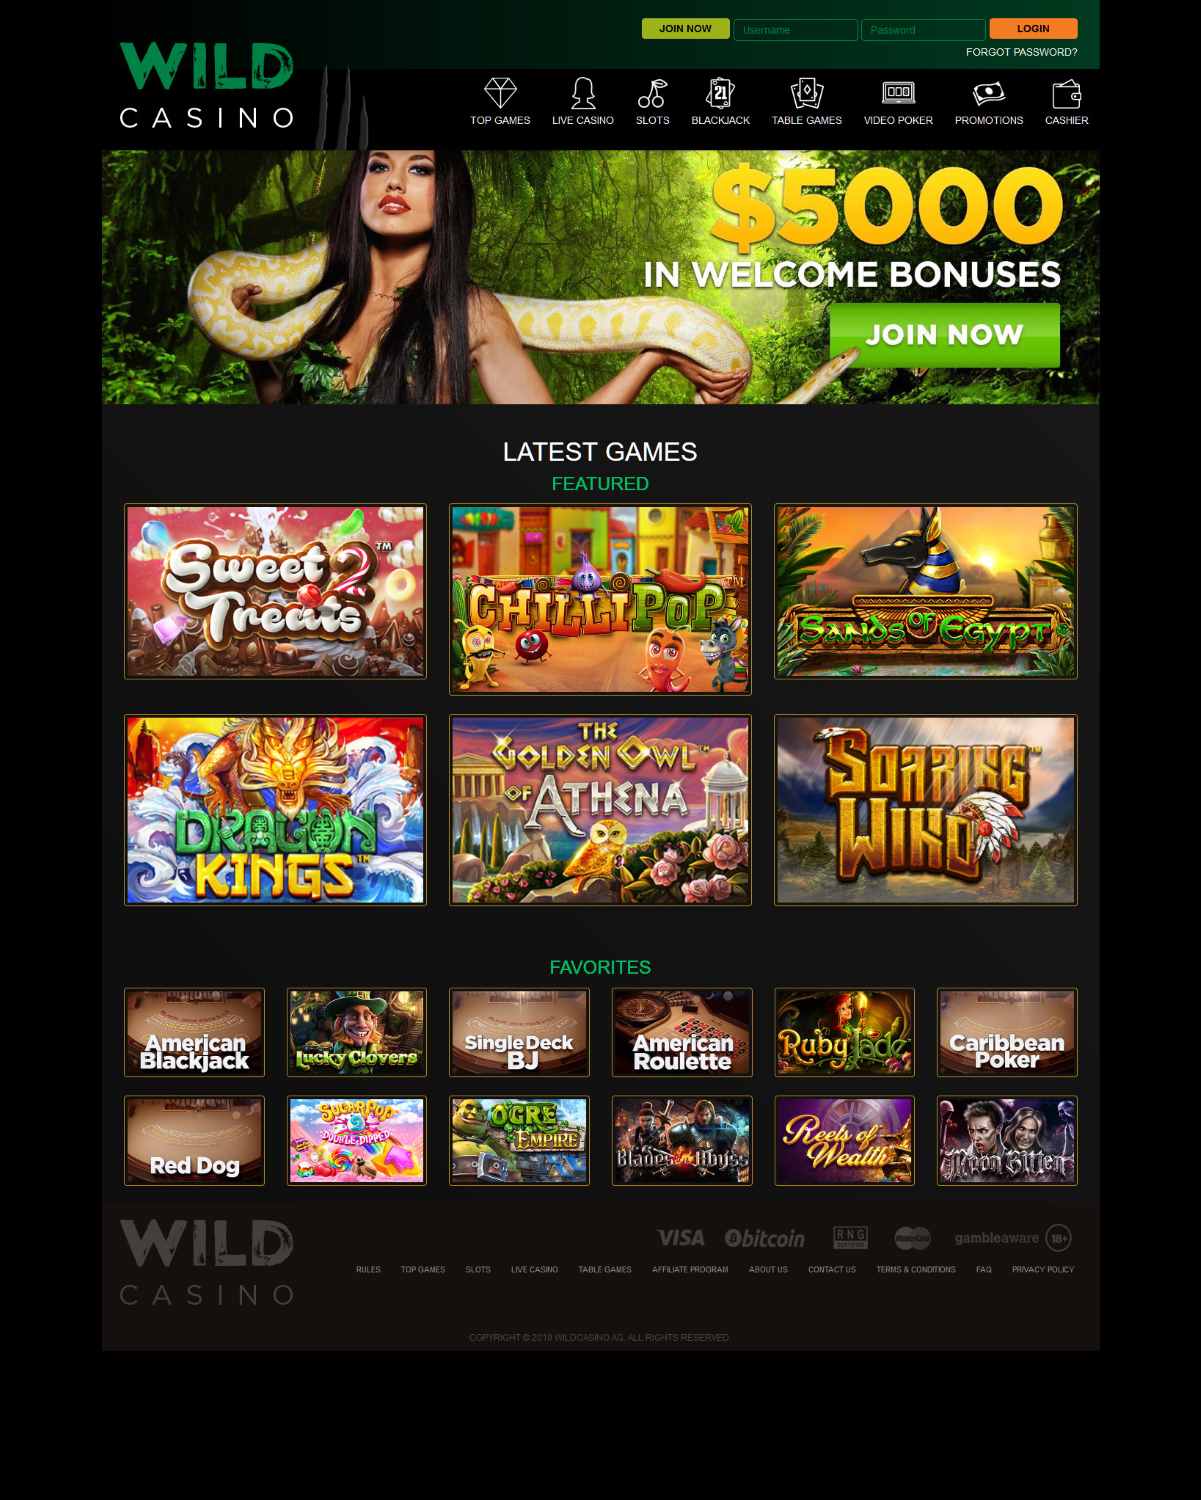 Slotland casino bonus codes new